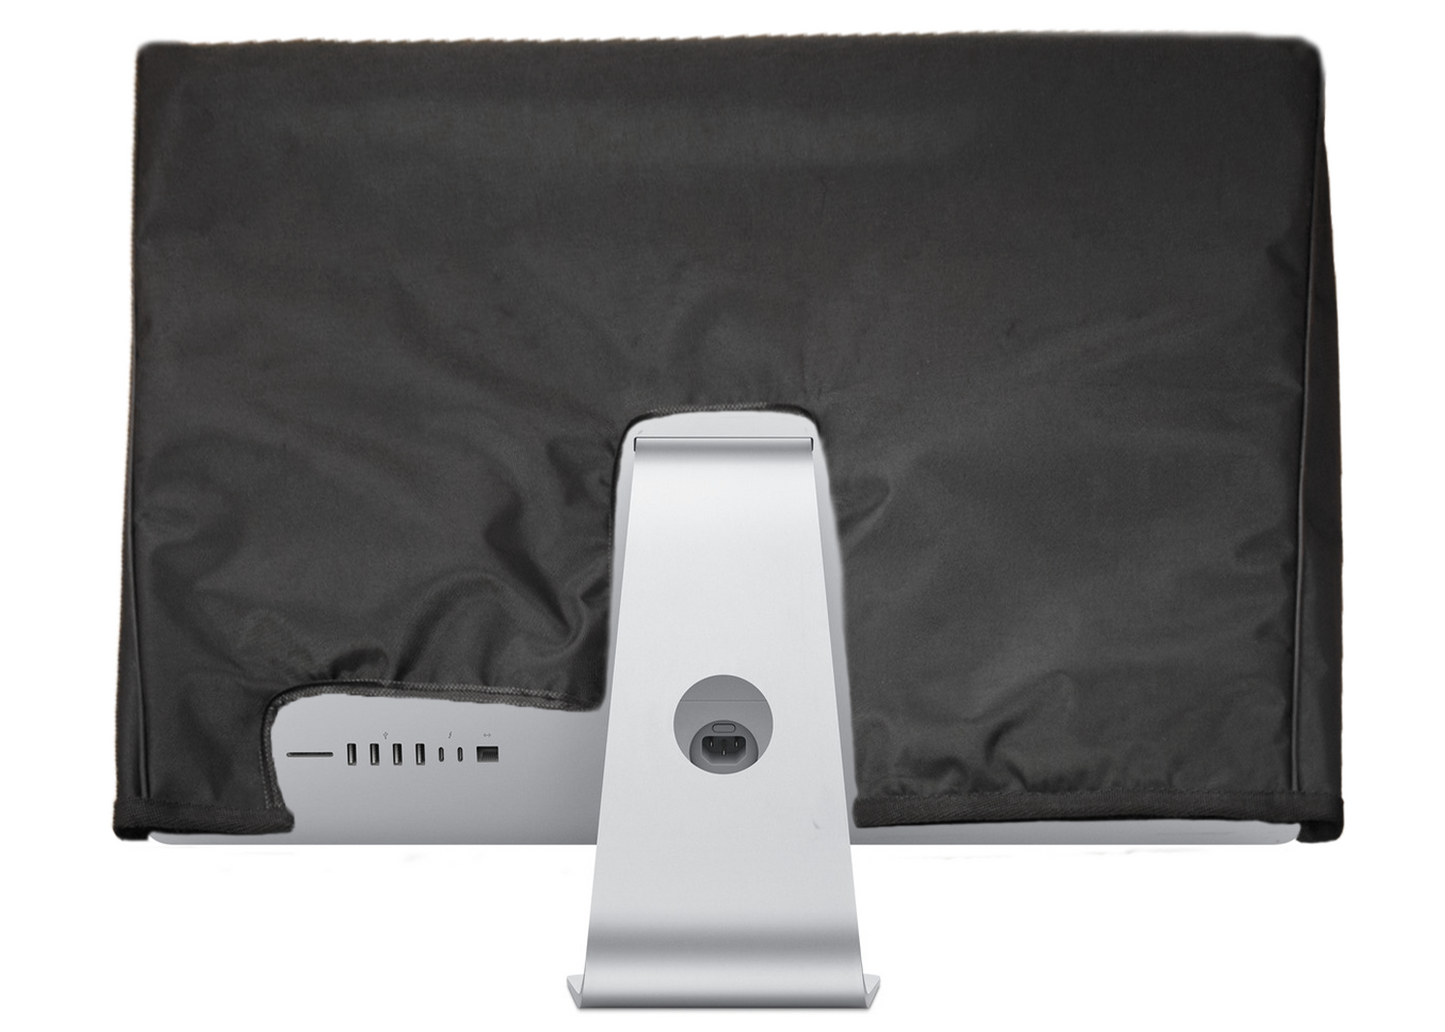 Custom padded dust cover for Apple iMac 21.5" 4k 5k (2015)